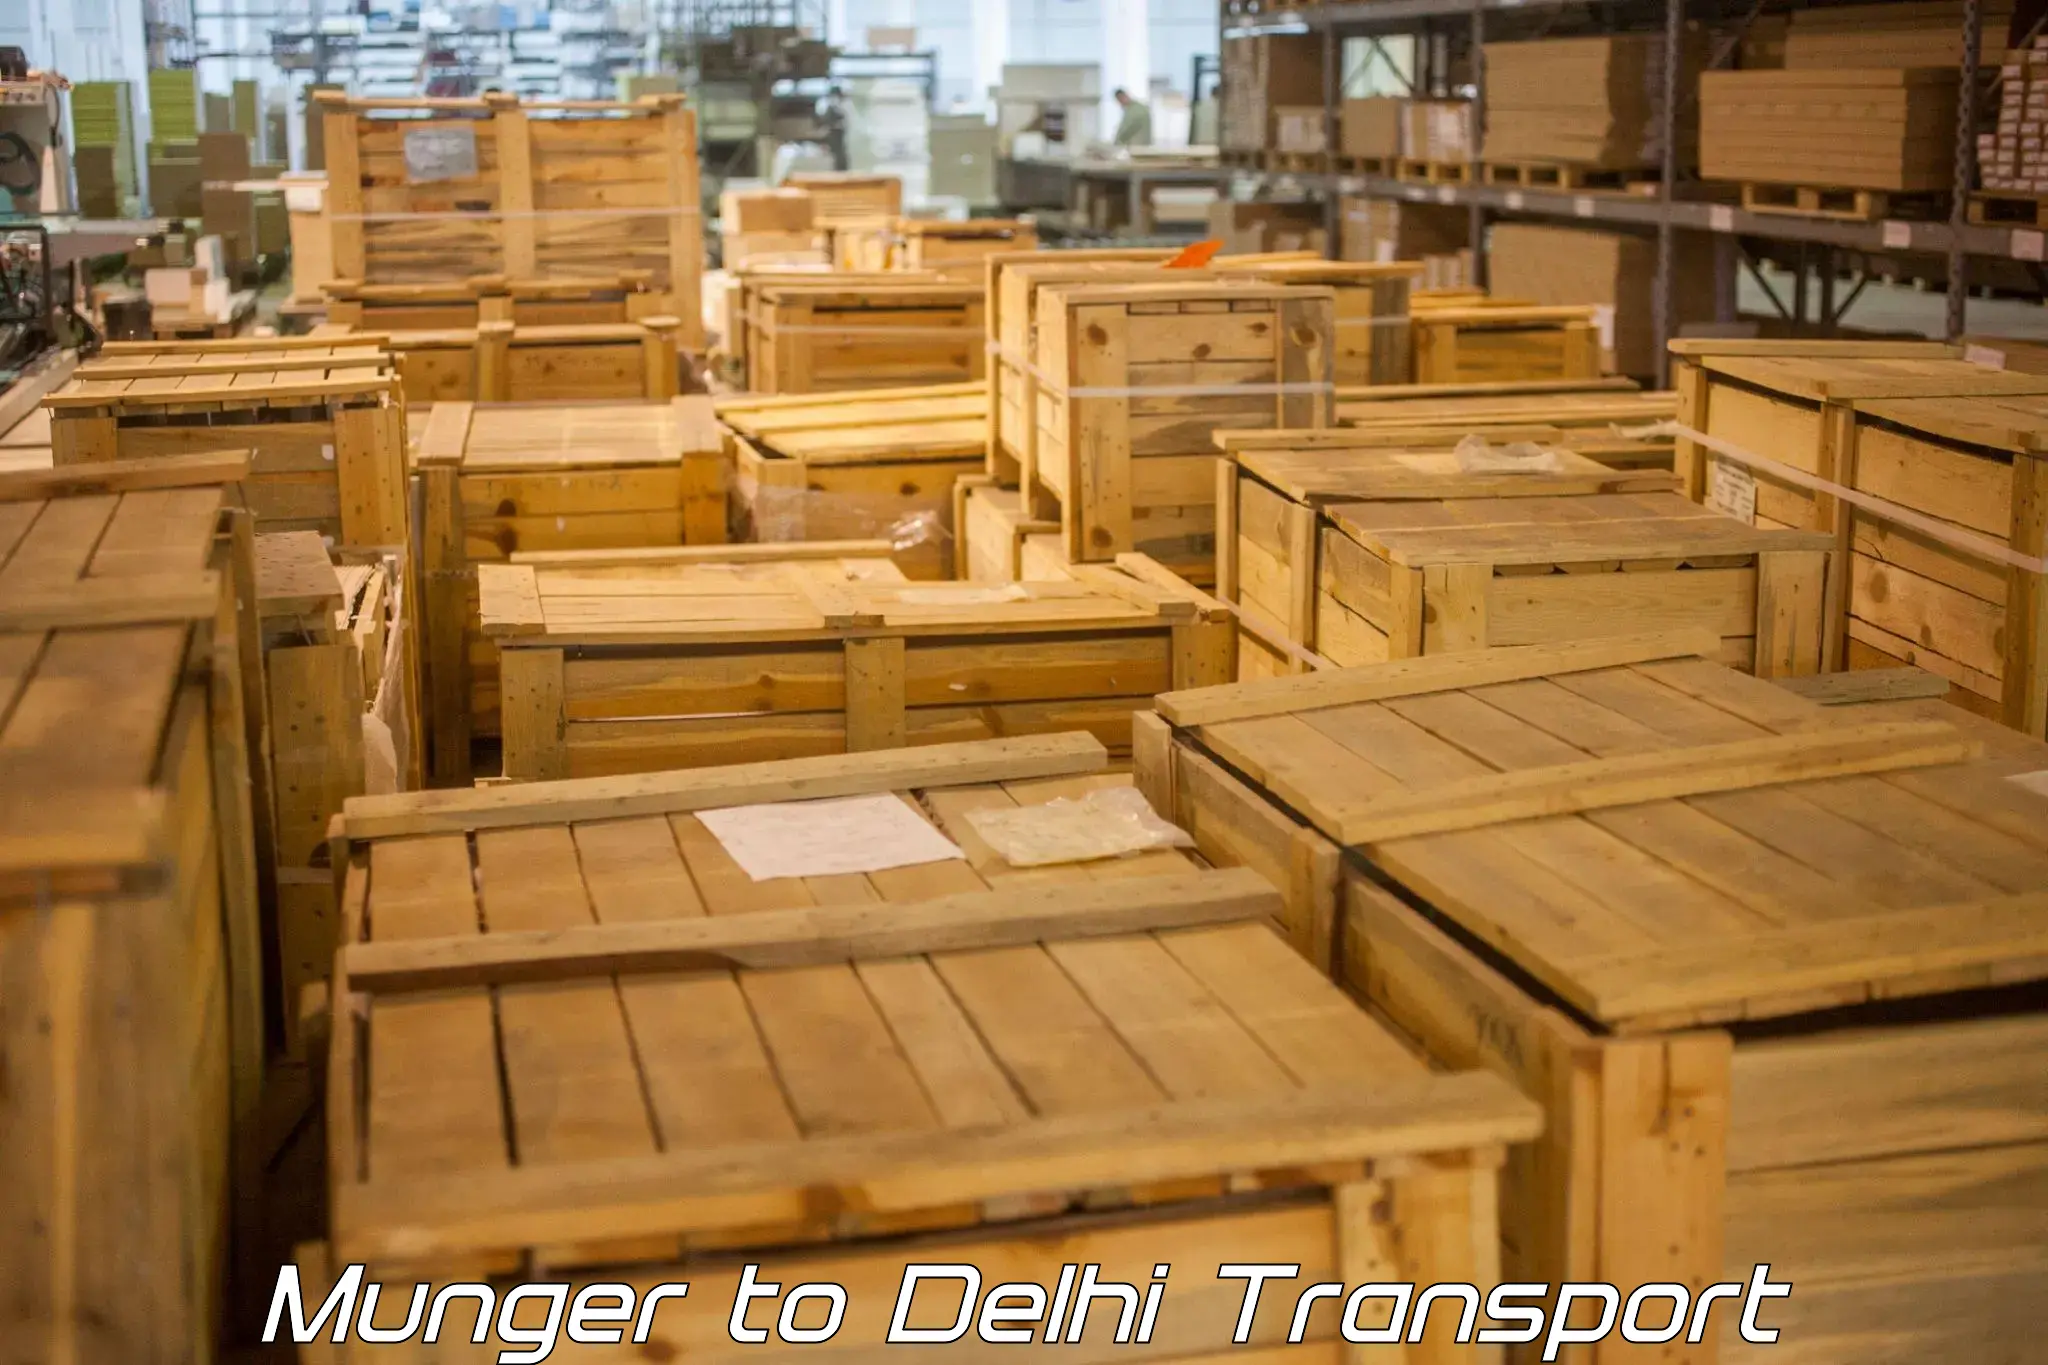 Interstate transport services Munger to Delhi